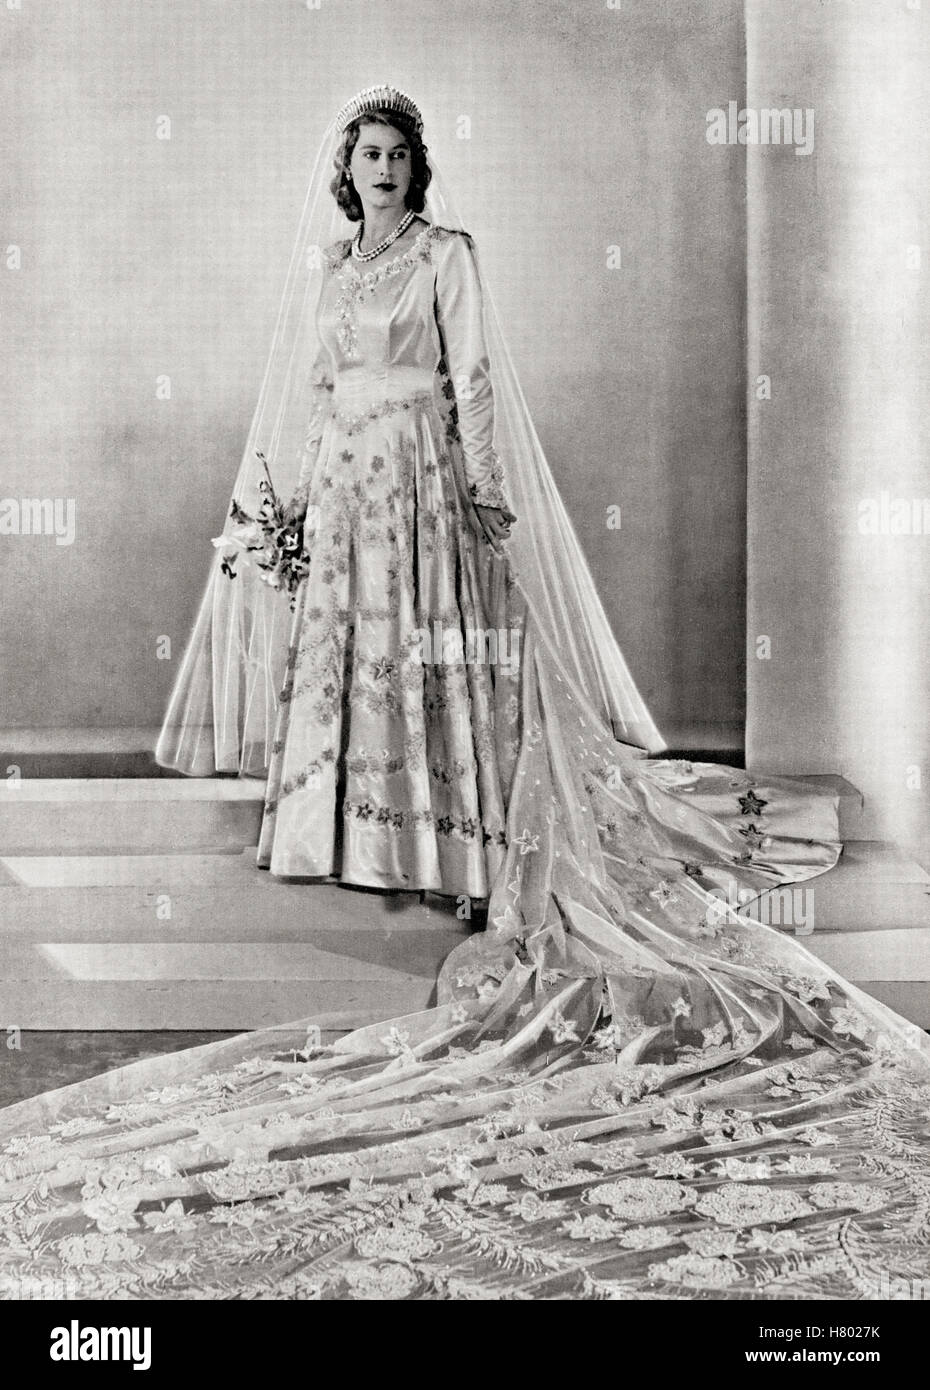 Prinzessin Elizabeth, zukünftige Königin Elizabeth II, 1926 - 2022, hier an ihrem Hochzeitstag gesehen. Von einem Foto aus dem Jahr 1947. Stockfoto